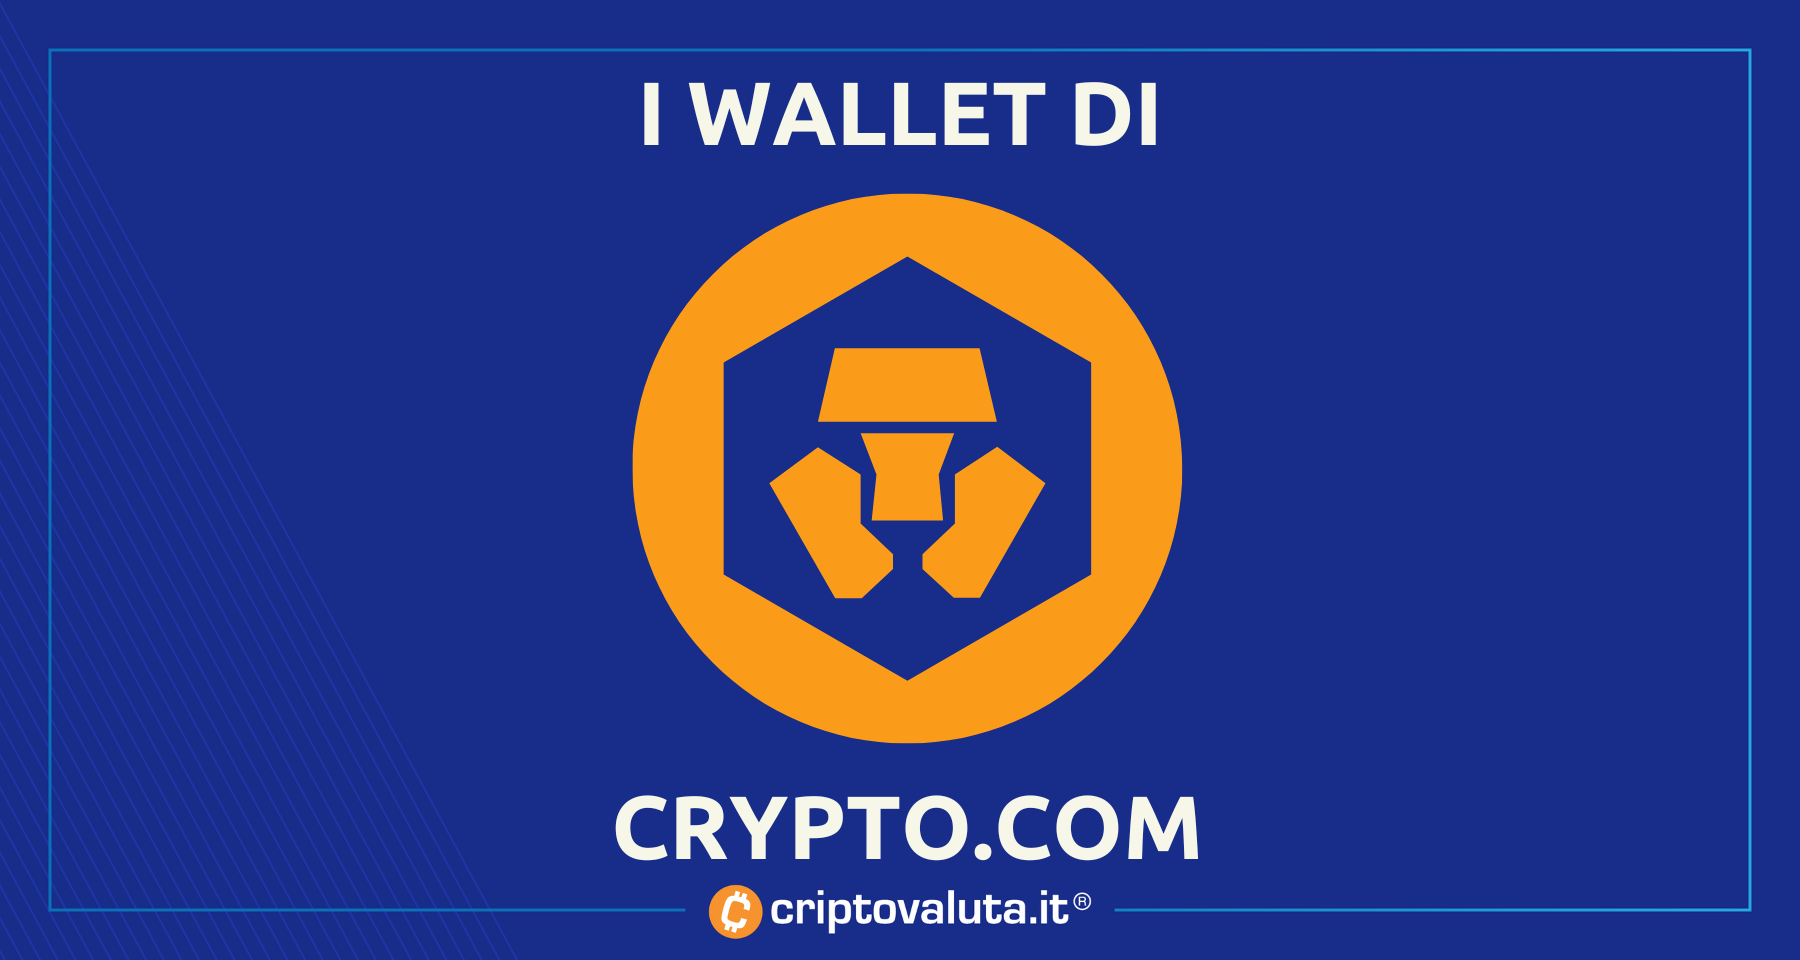 Ecco i wallet di Crypto.com | Composizione crypto SCONVOLGENTE!